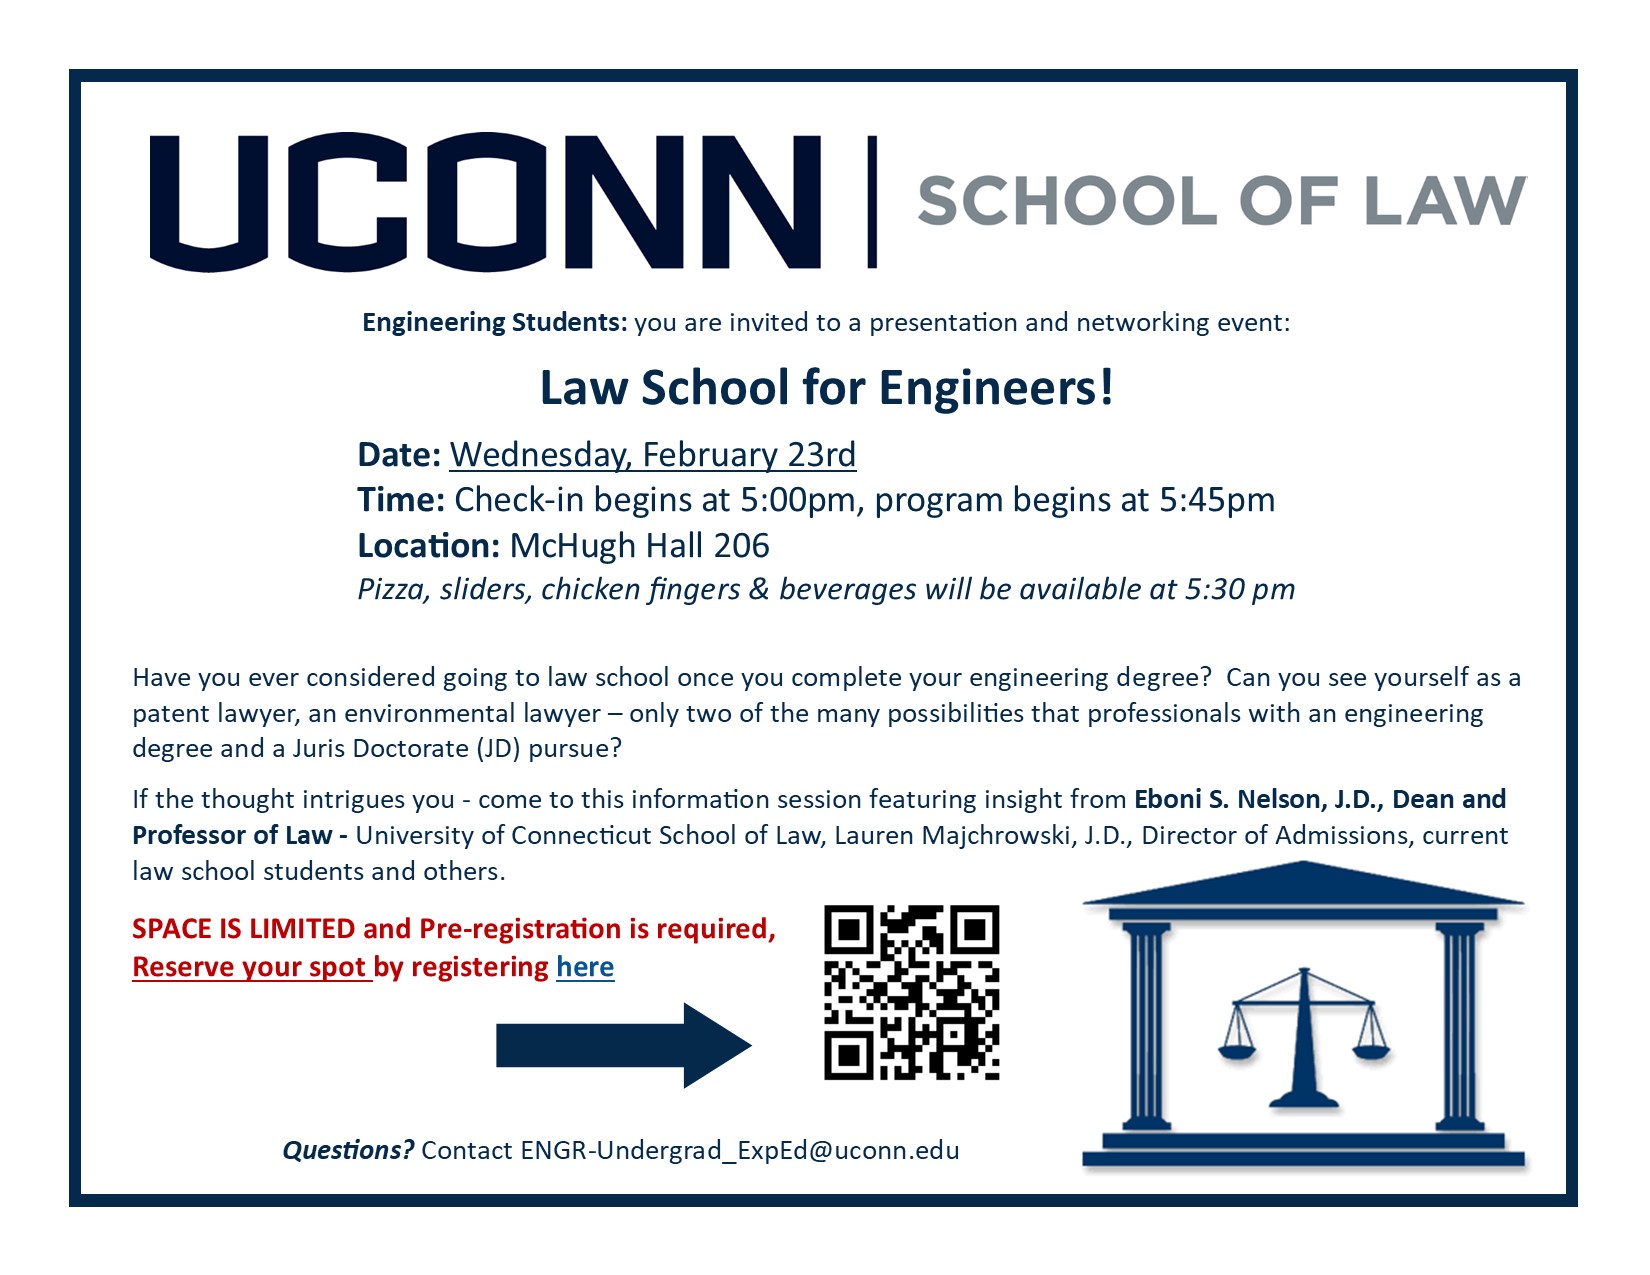 uconn school of law